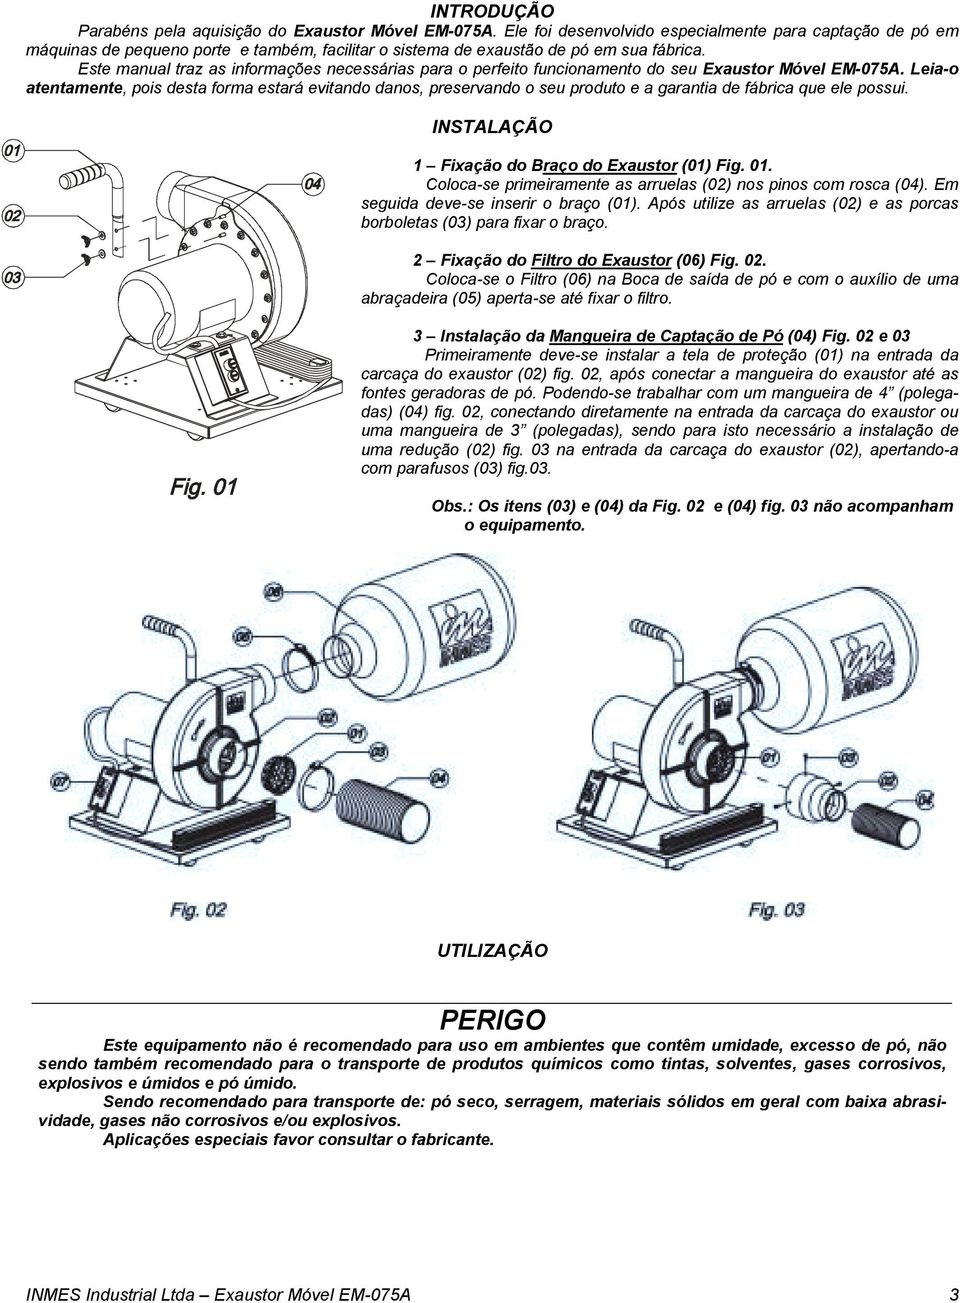 Este manual traz as informações necessárias para o perfeito funcionamento do seu Exaustor Móvel EM-075A.